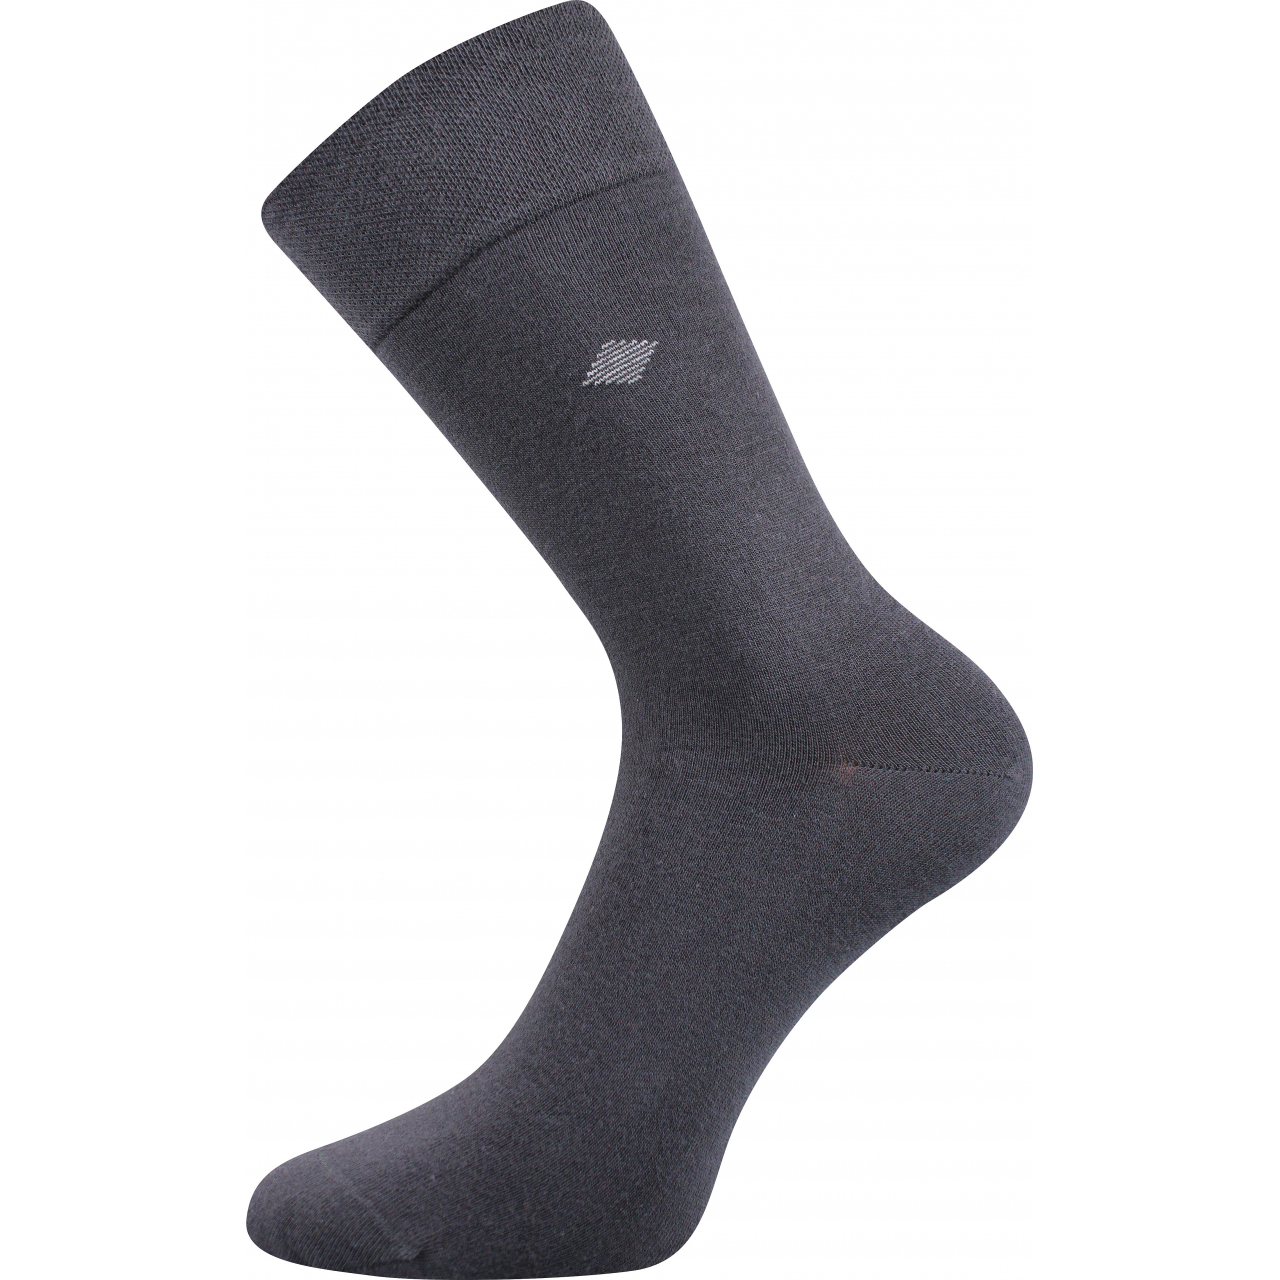 Ponožky pánské společenské Lonka Diagon - tmavě šedé, 43-46